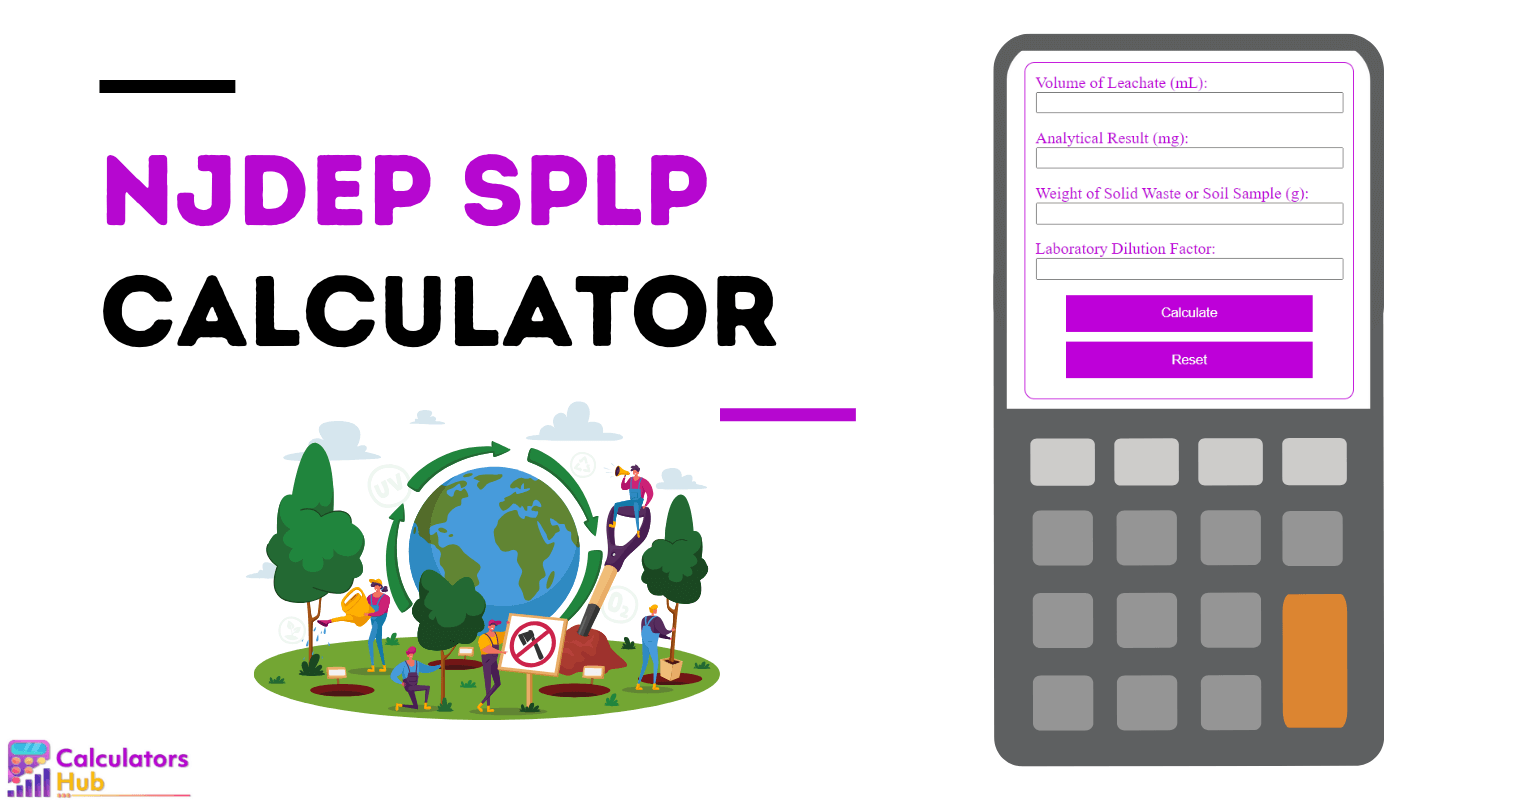 NJDEP SPLP Calculator